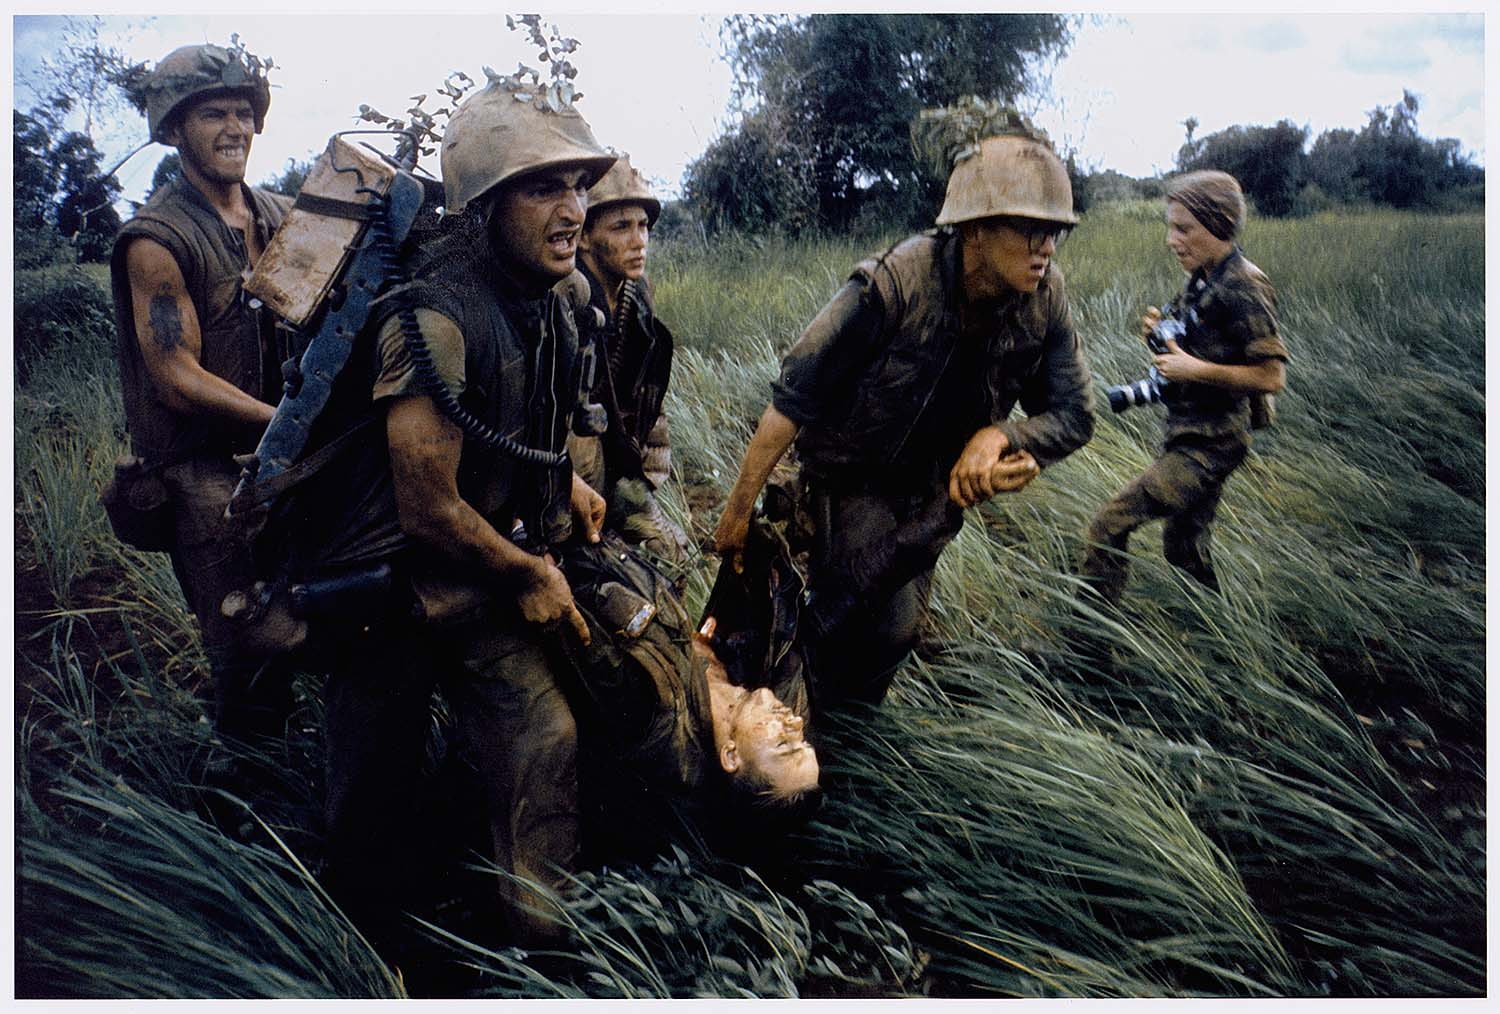 Wars, Vietnam War